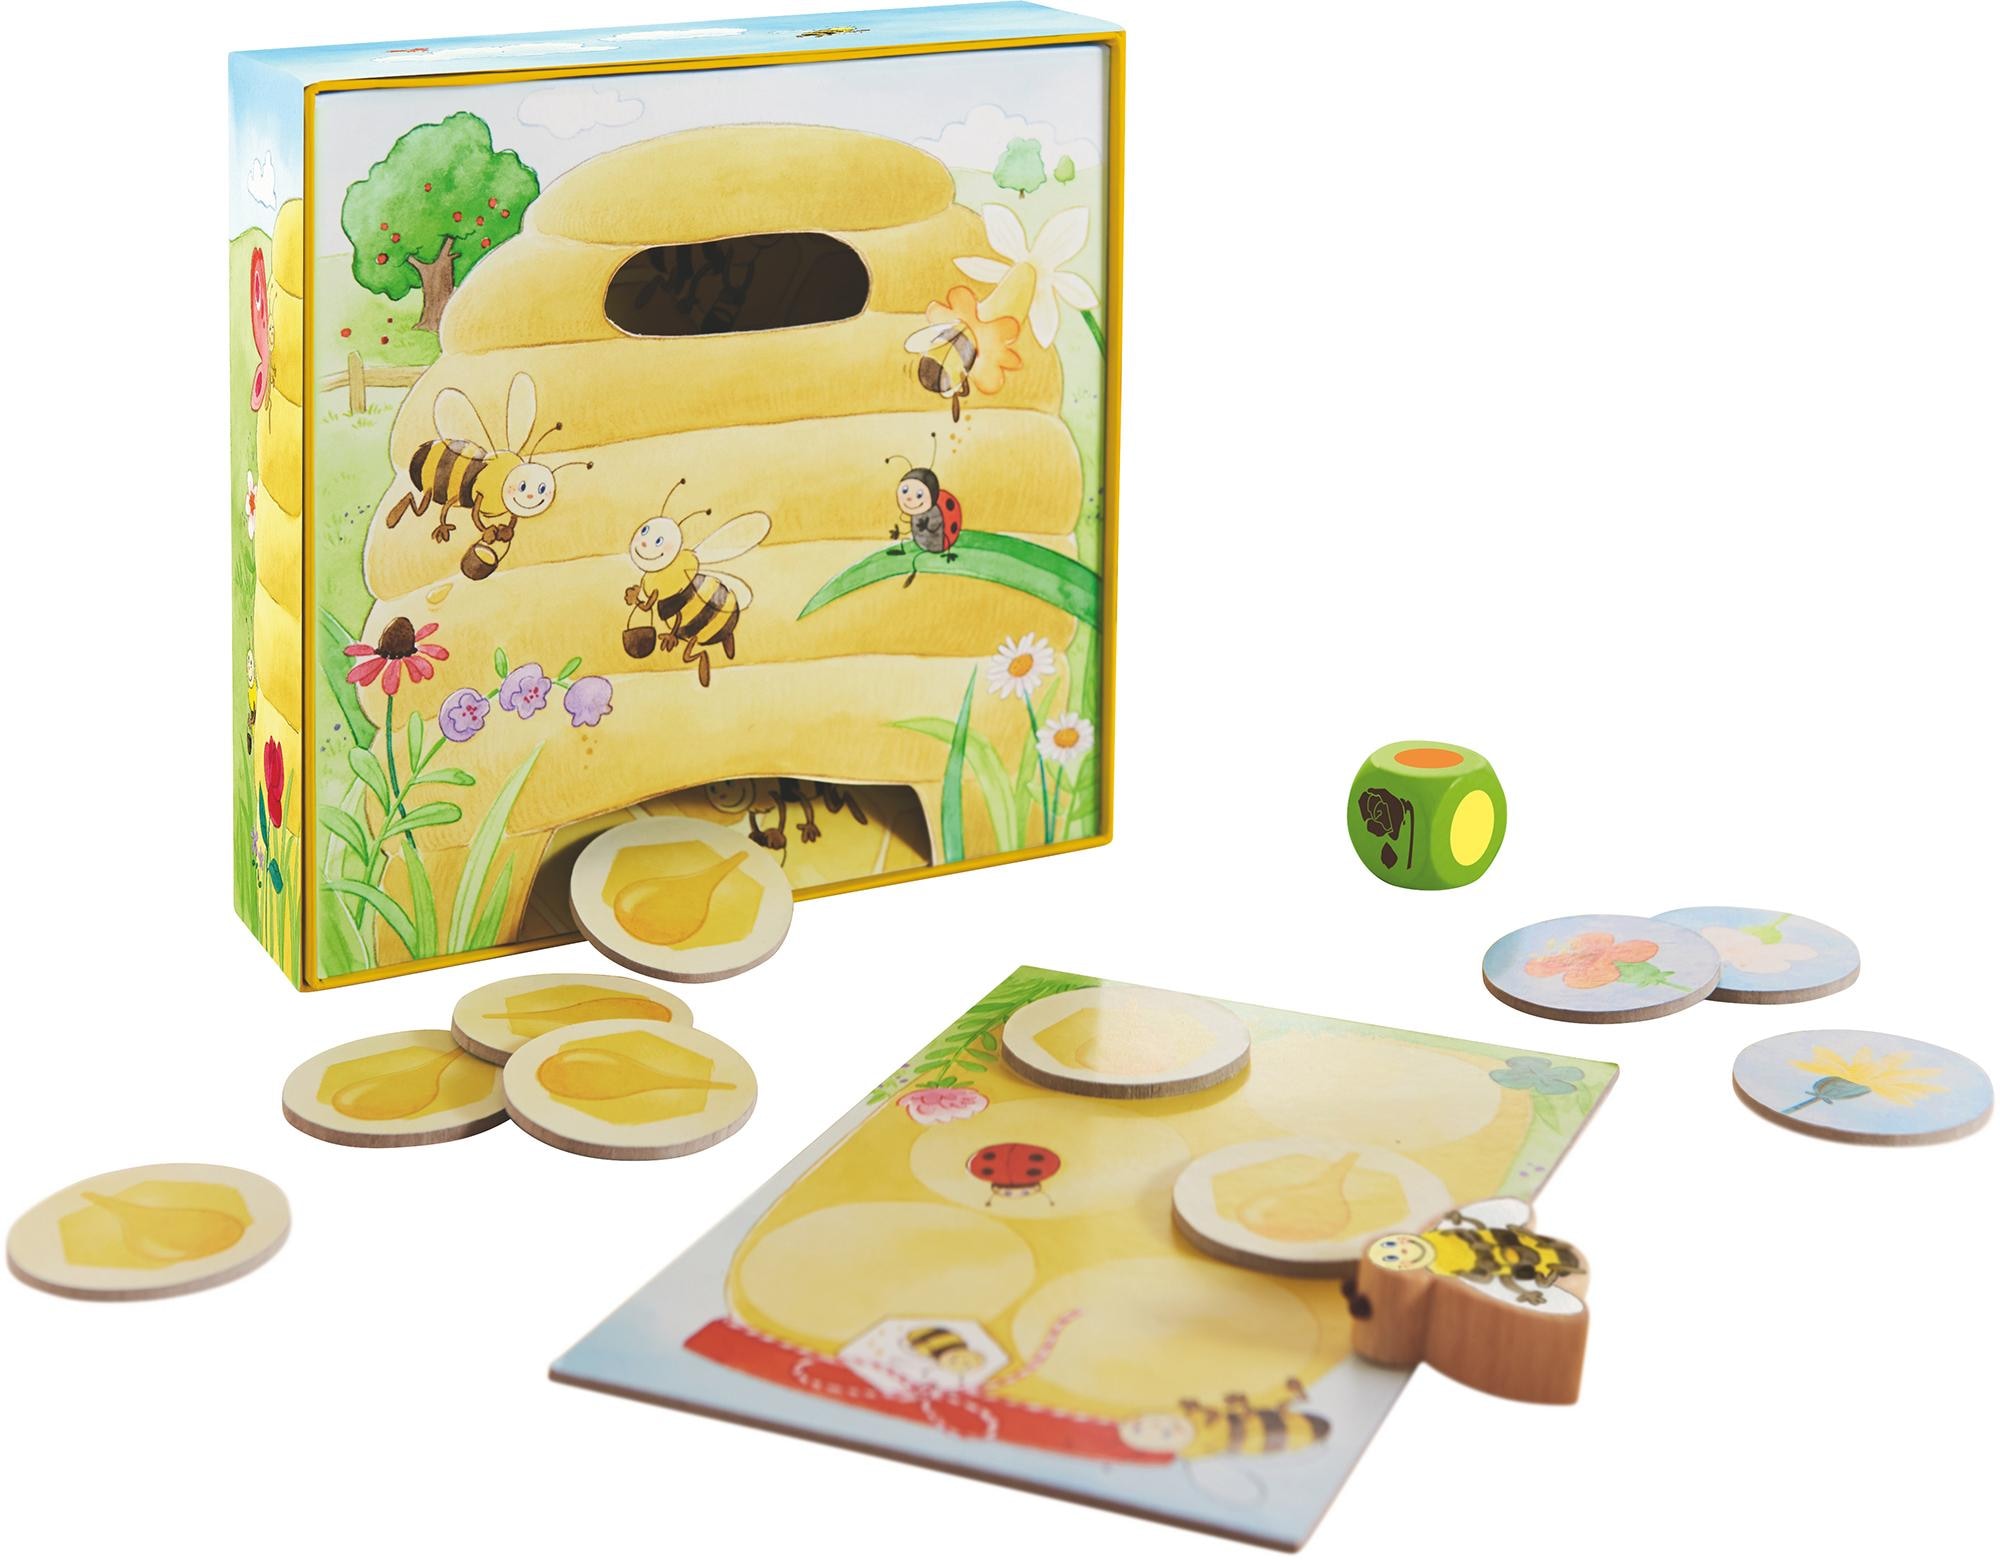 Haba Spiel »Meine ersten Spiele - Hanni Honigbiene«, Made in Germany